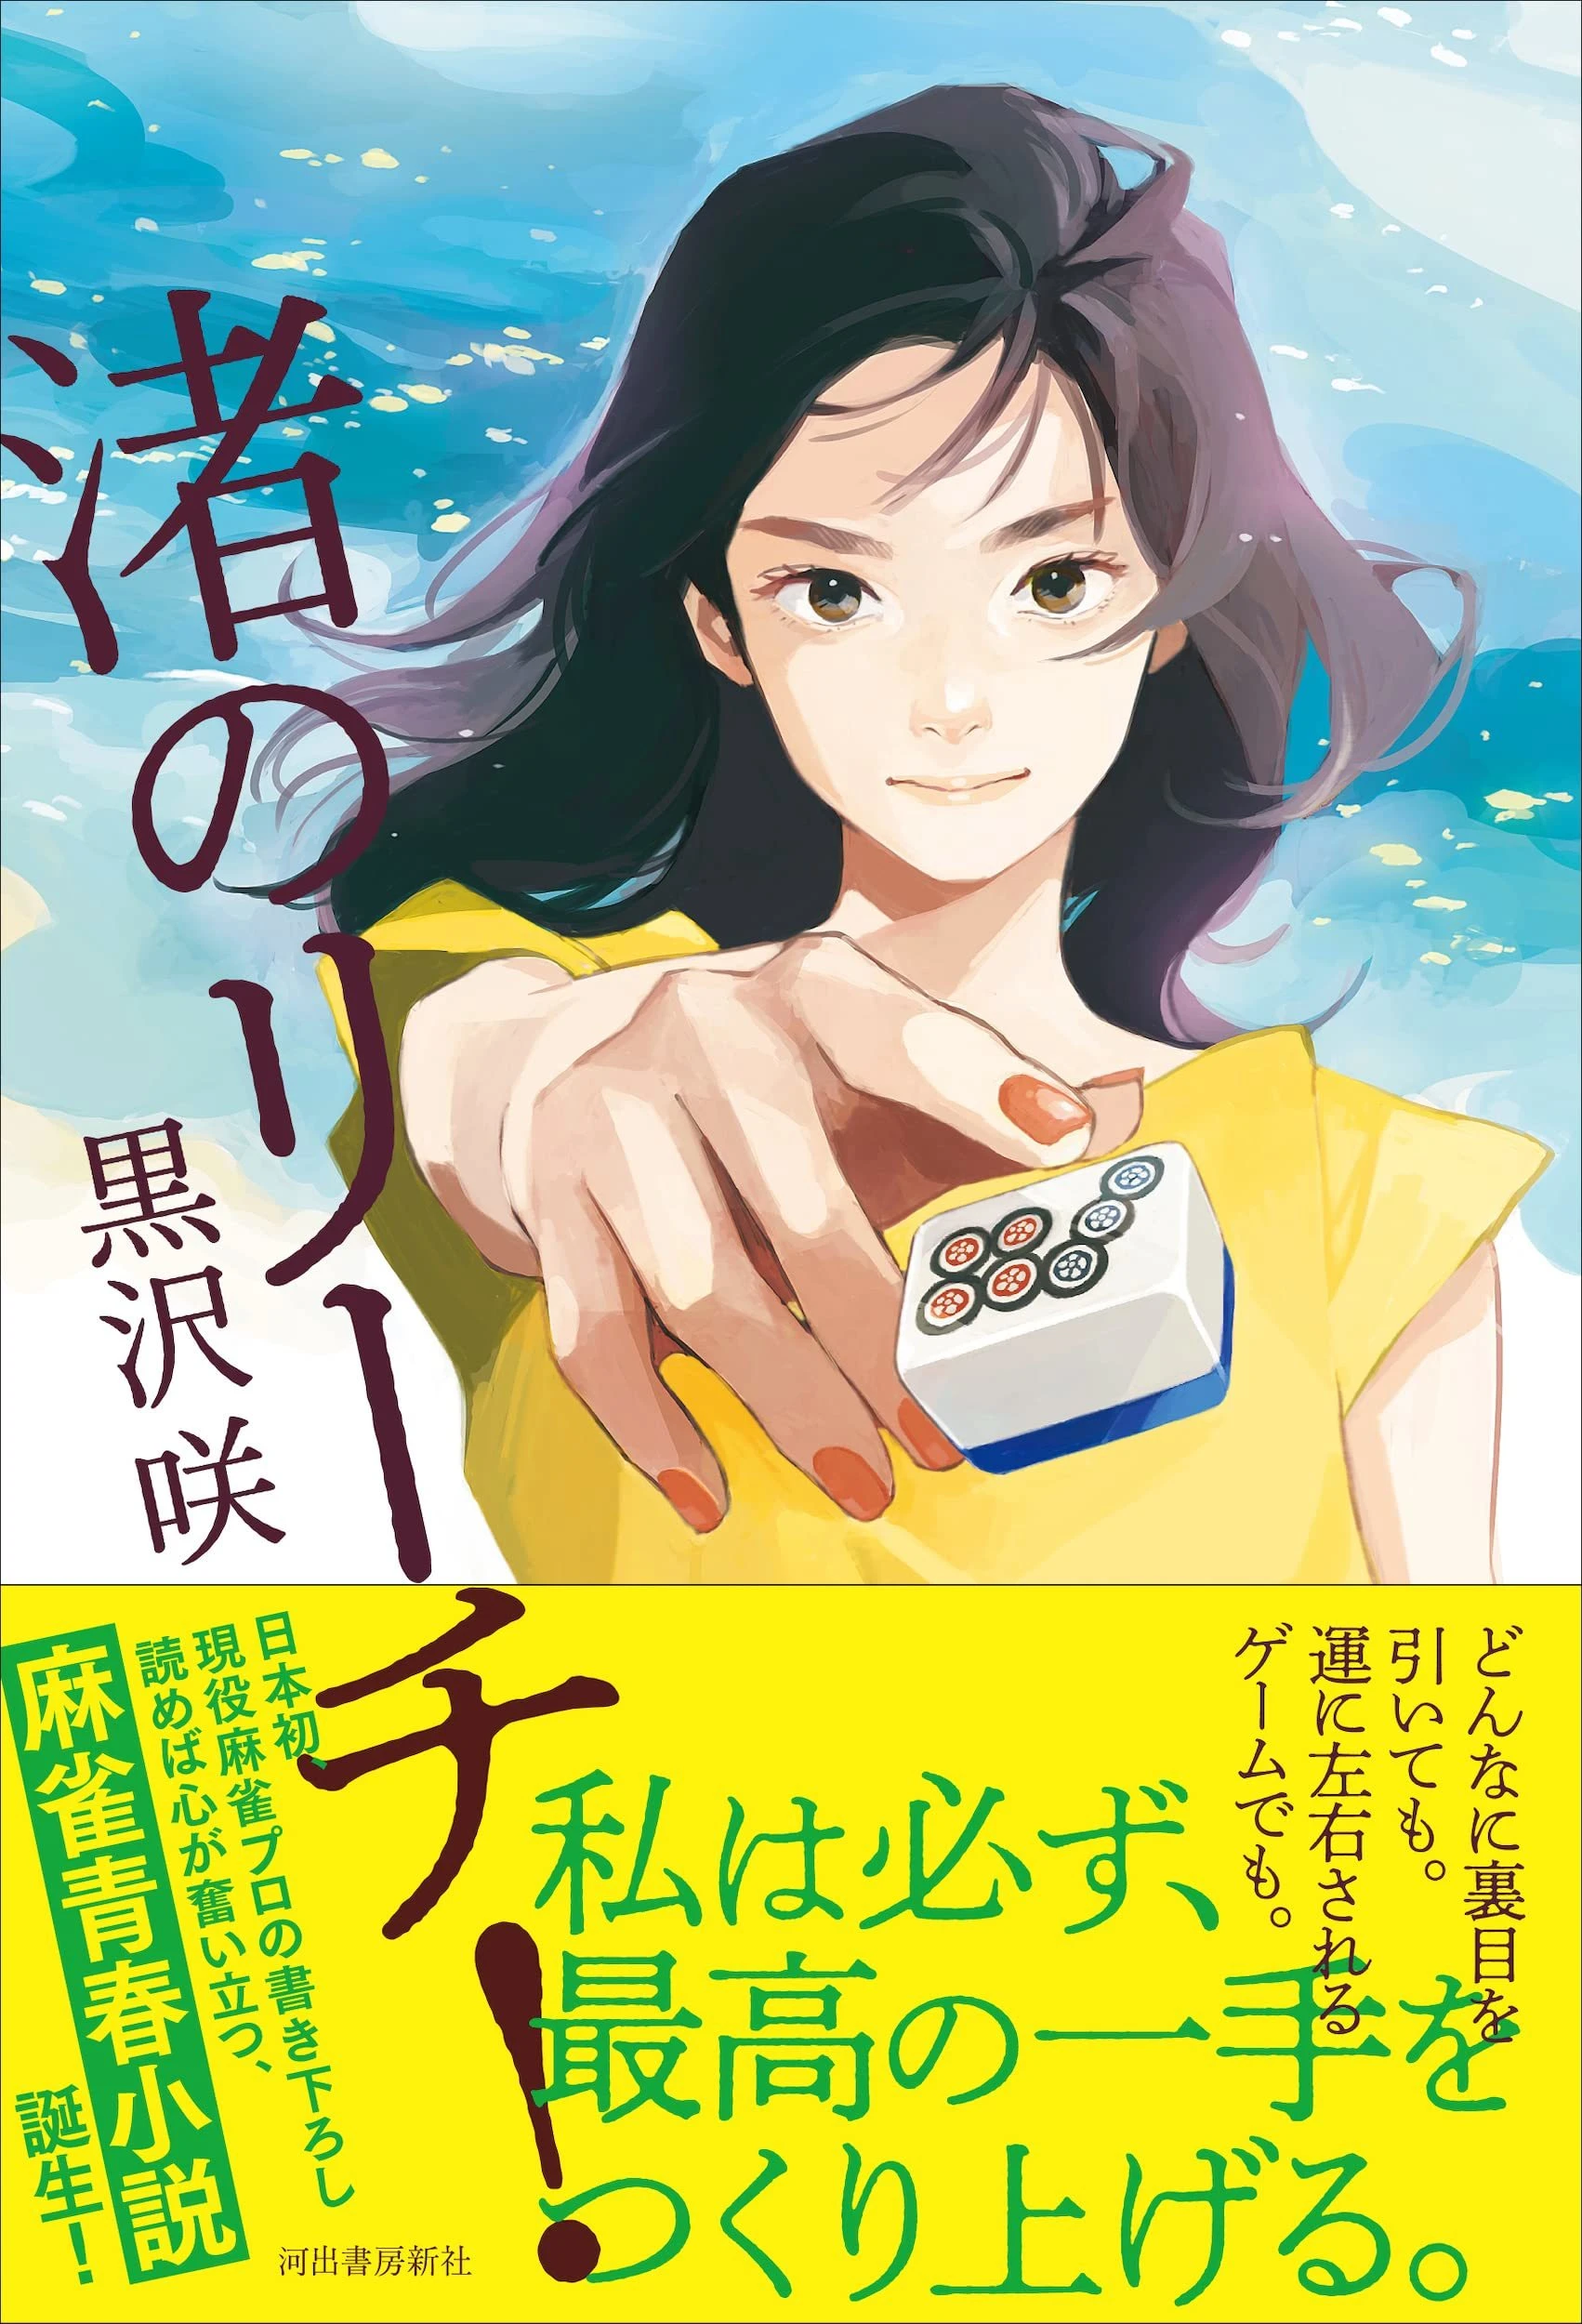 プロ雀士 黒沢咲の初著書『渚のリーチ！』 実体験が生んだ麻雀青春小説